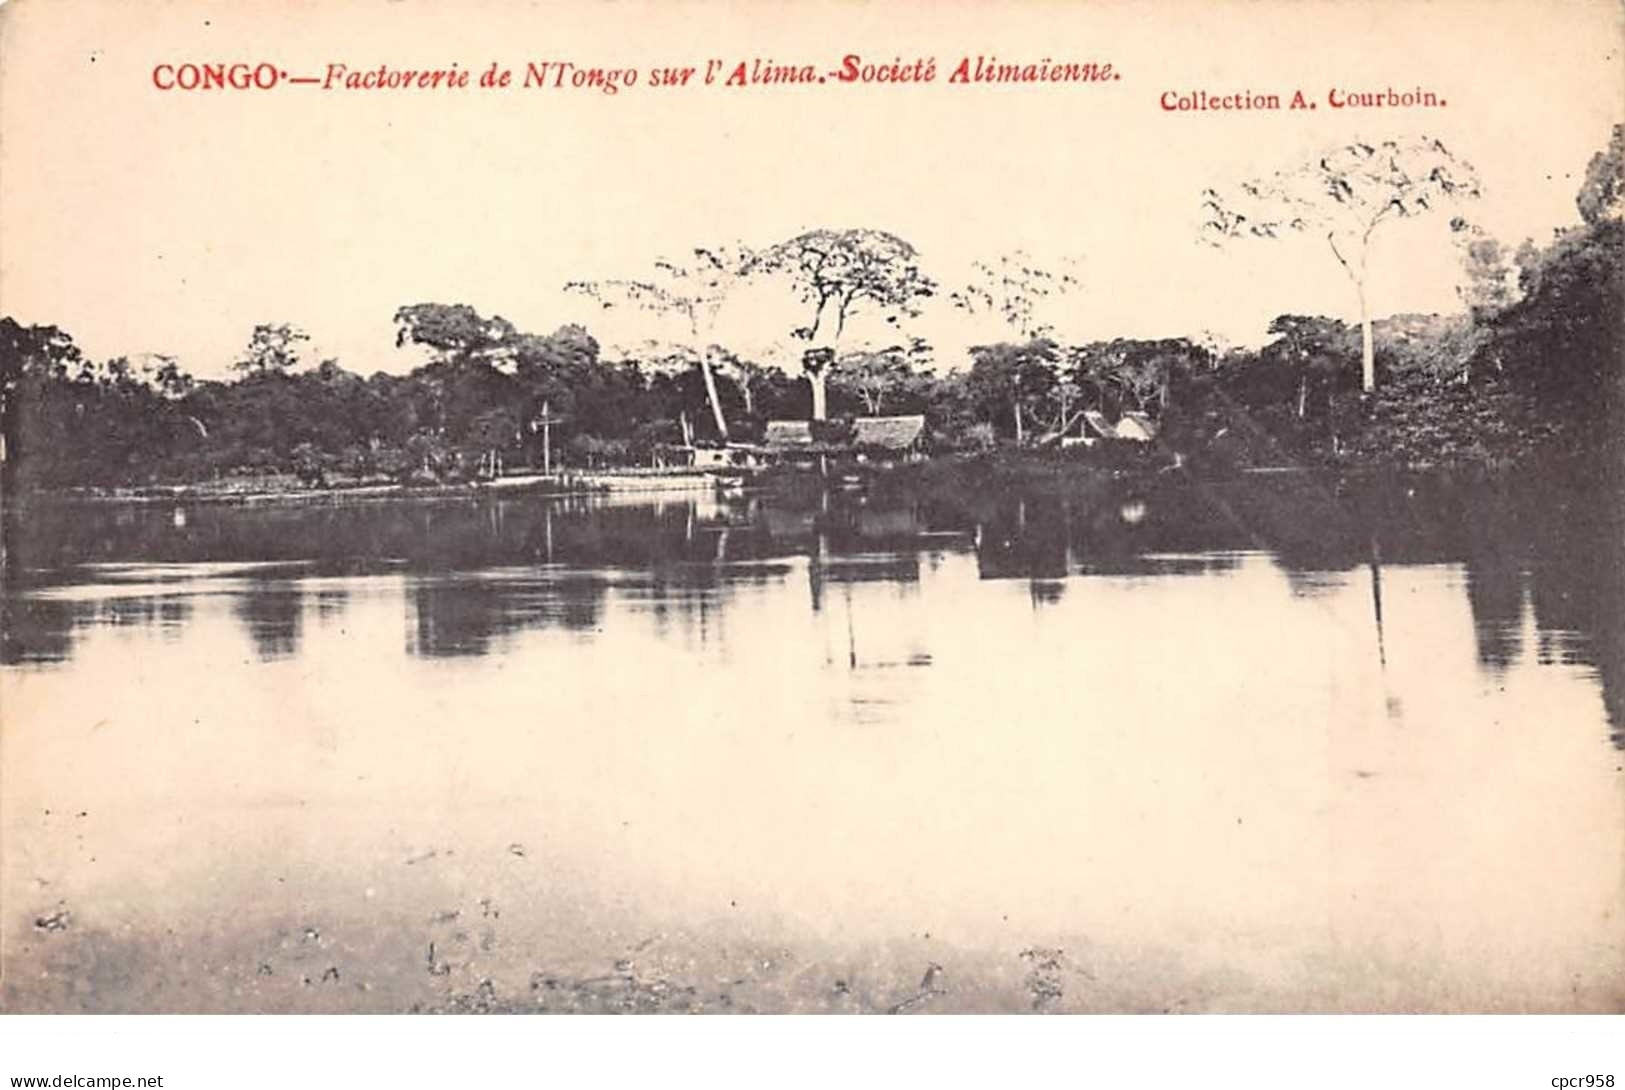 Congo Français - N°61549 - Factories De N'Tongo Sur L'Alima - Société Alimaïnne - French Congo